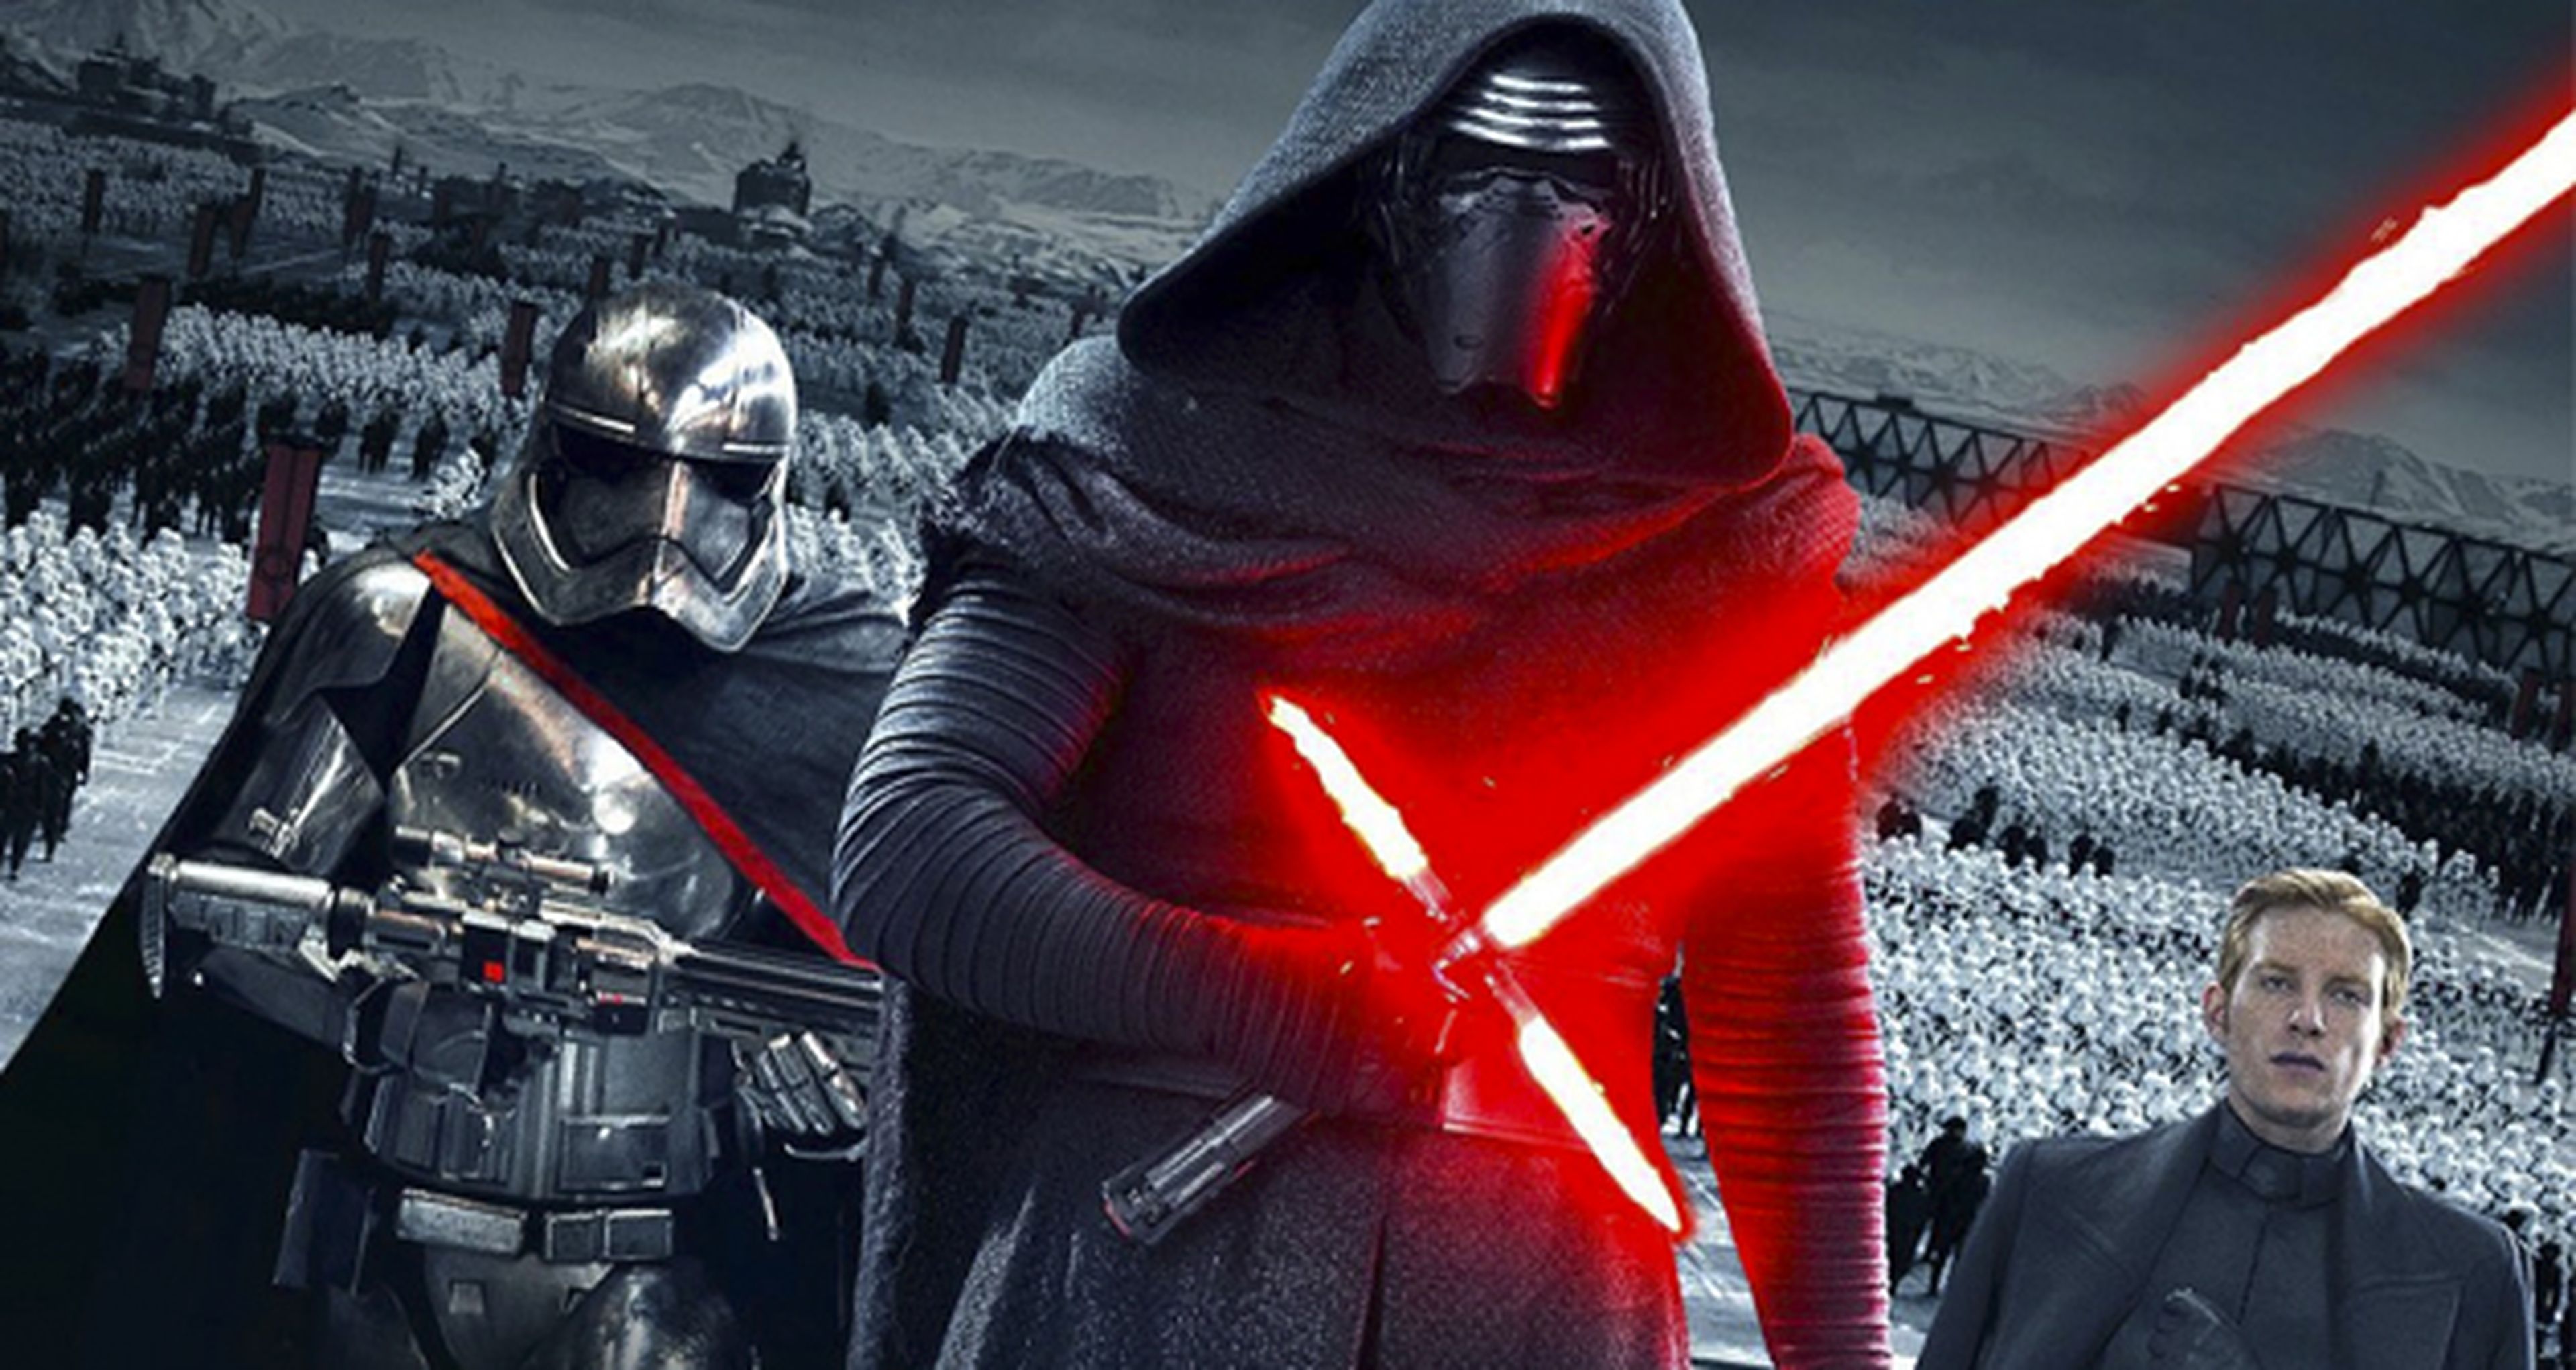 Star Wars VIII: teorías sobre lo que podría suceder tras El despertar de la fuerza